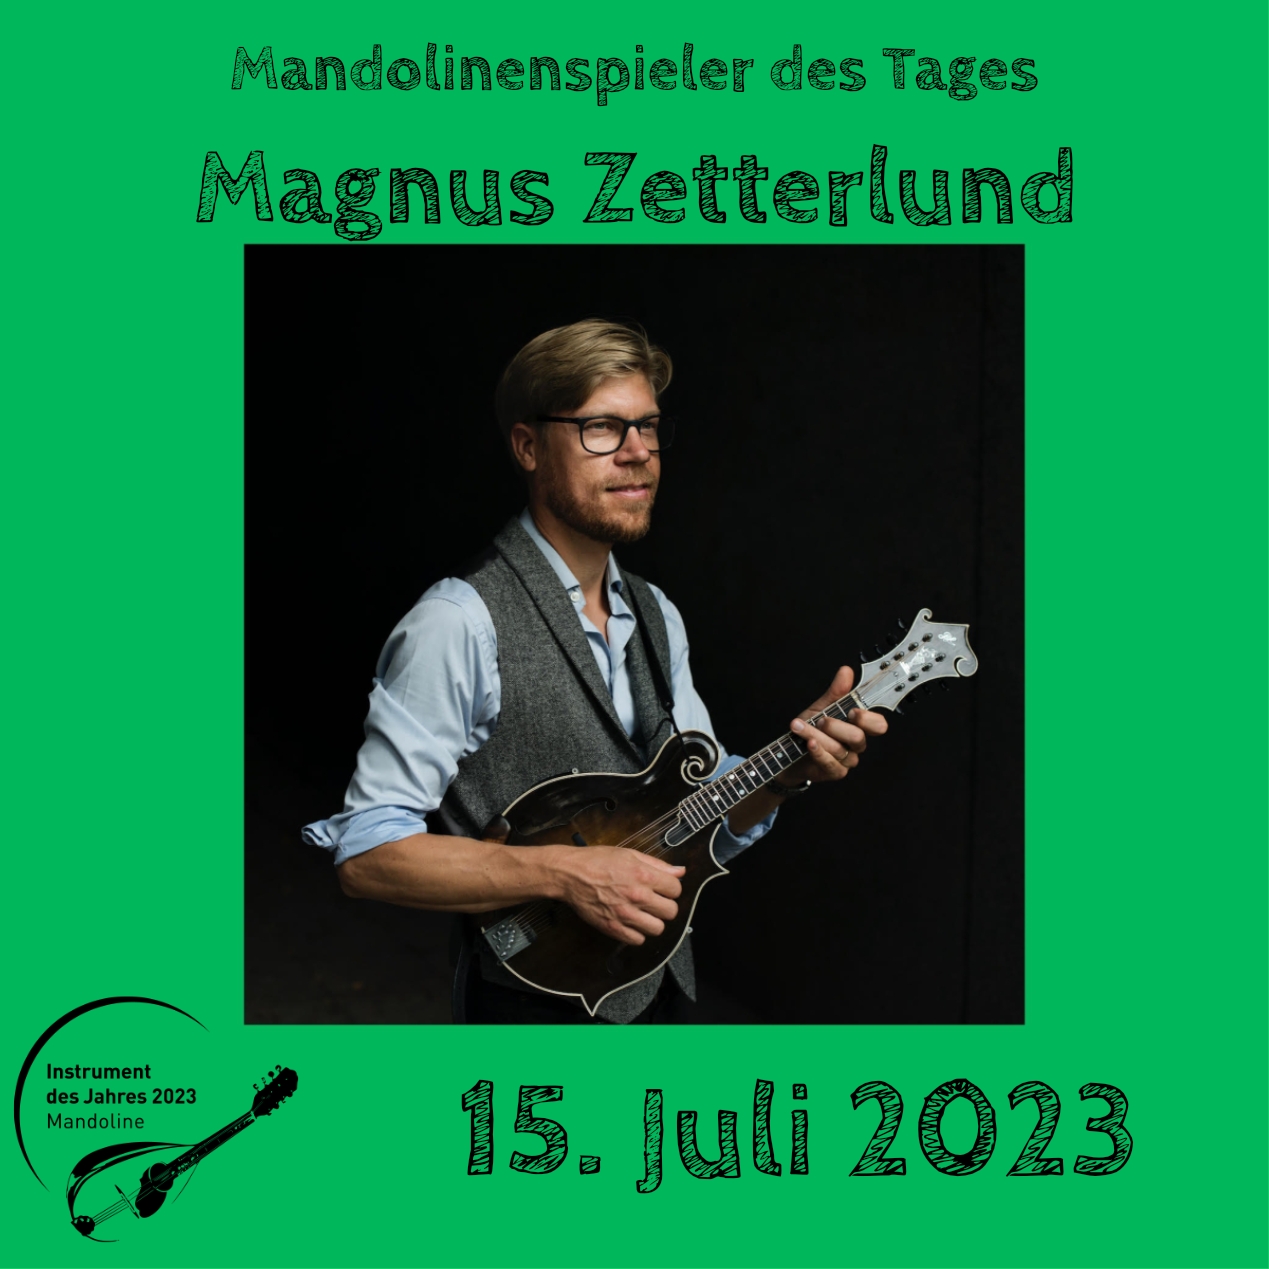 15. Juli - Magnus Zetterlund  Mandoline Instrument des Jahres 2023 Mandolinenspieler Mandolinenspielerin des Tages